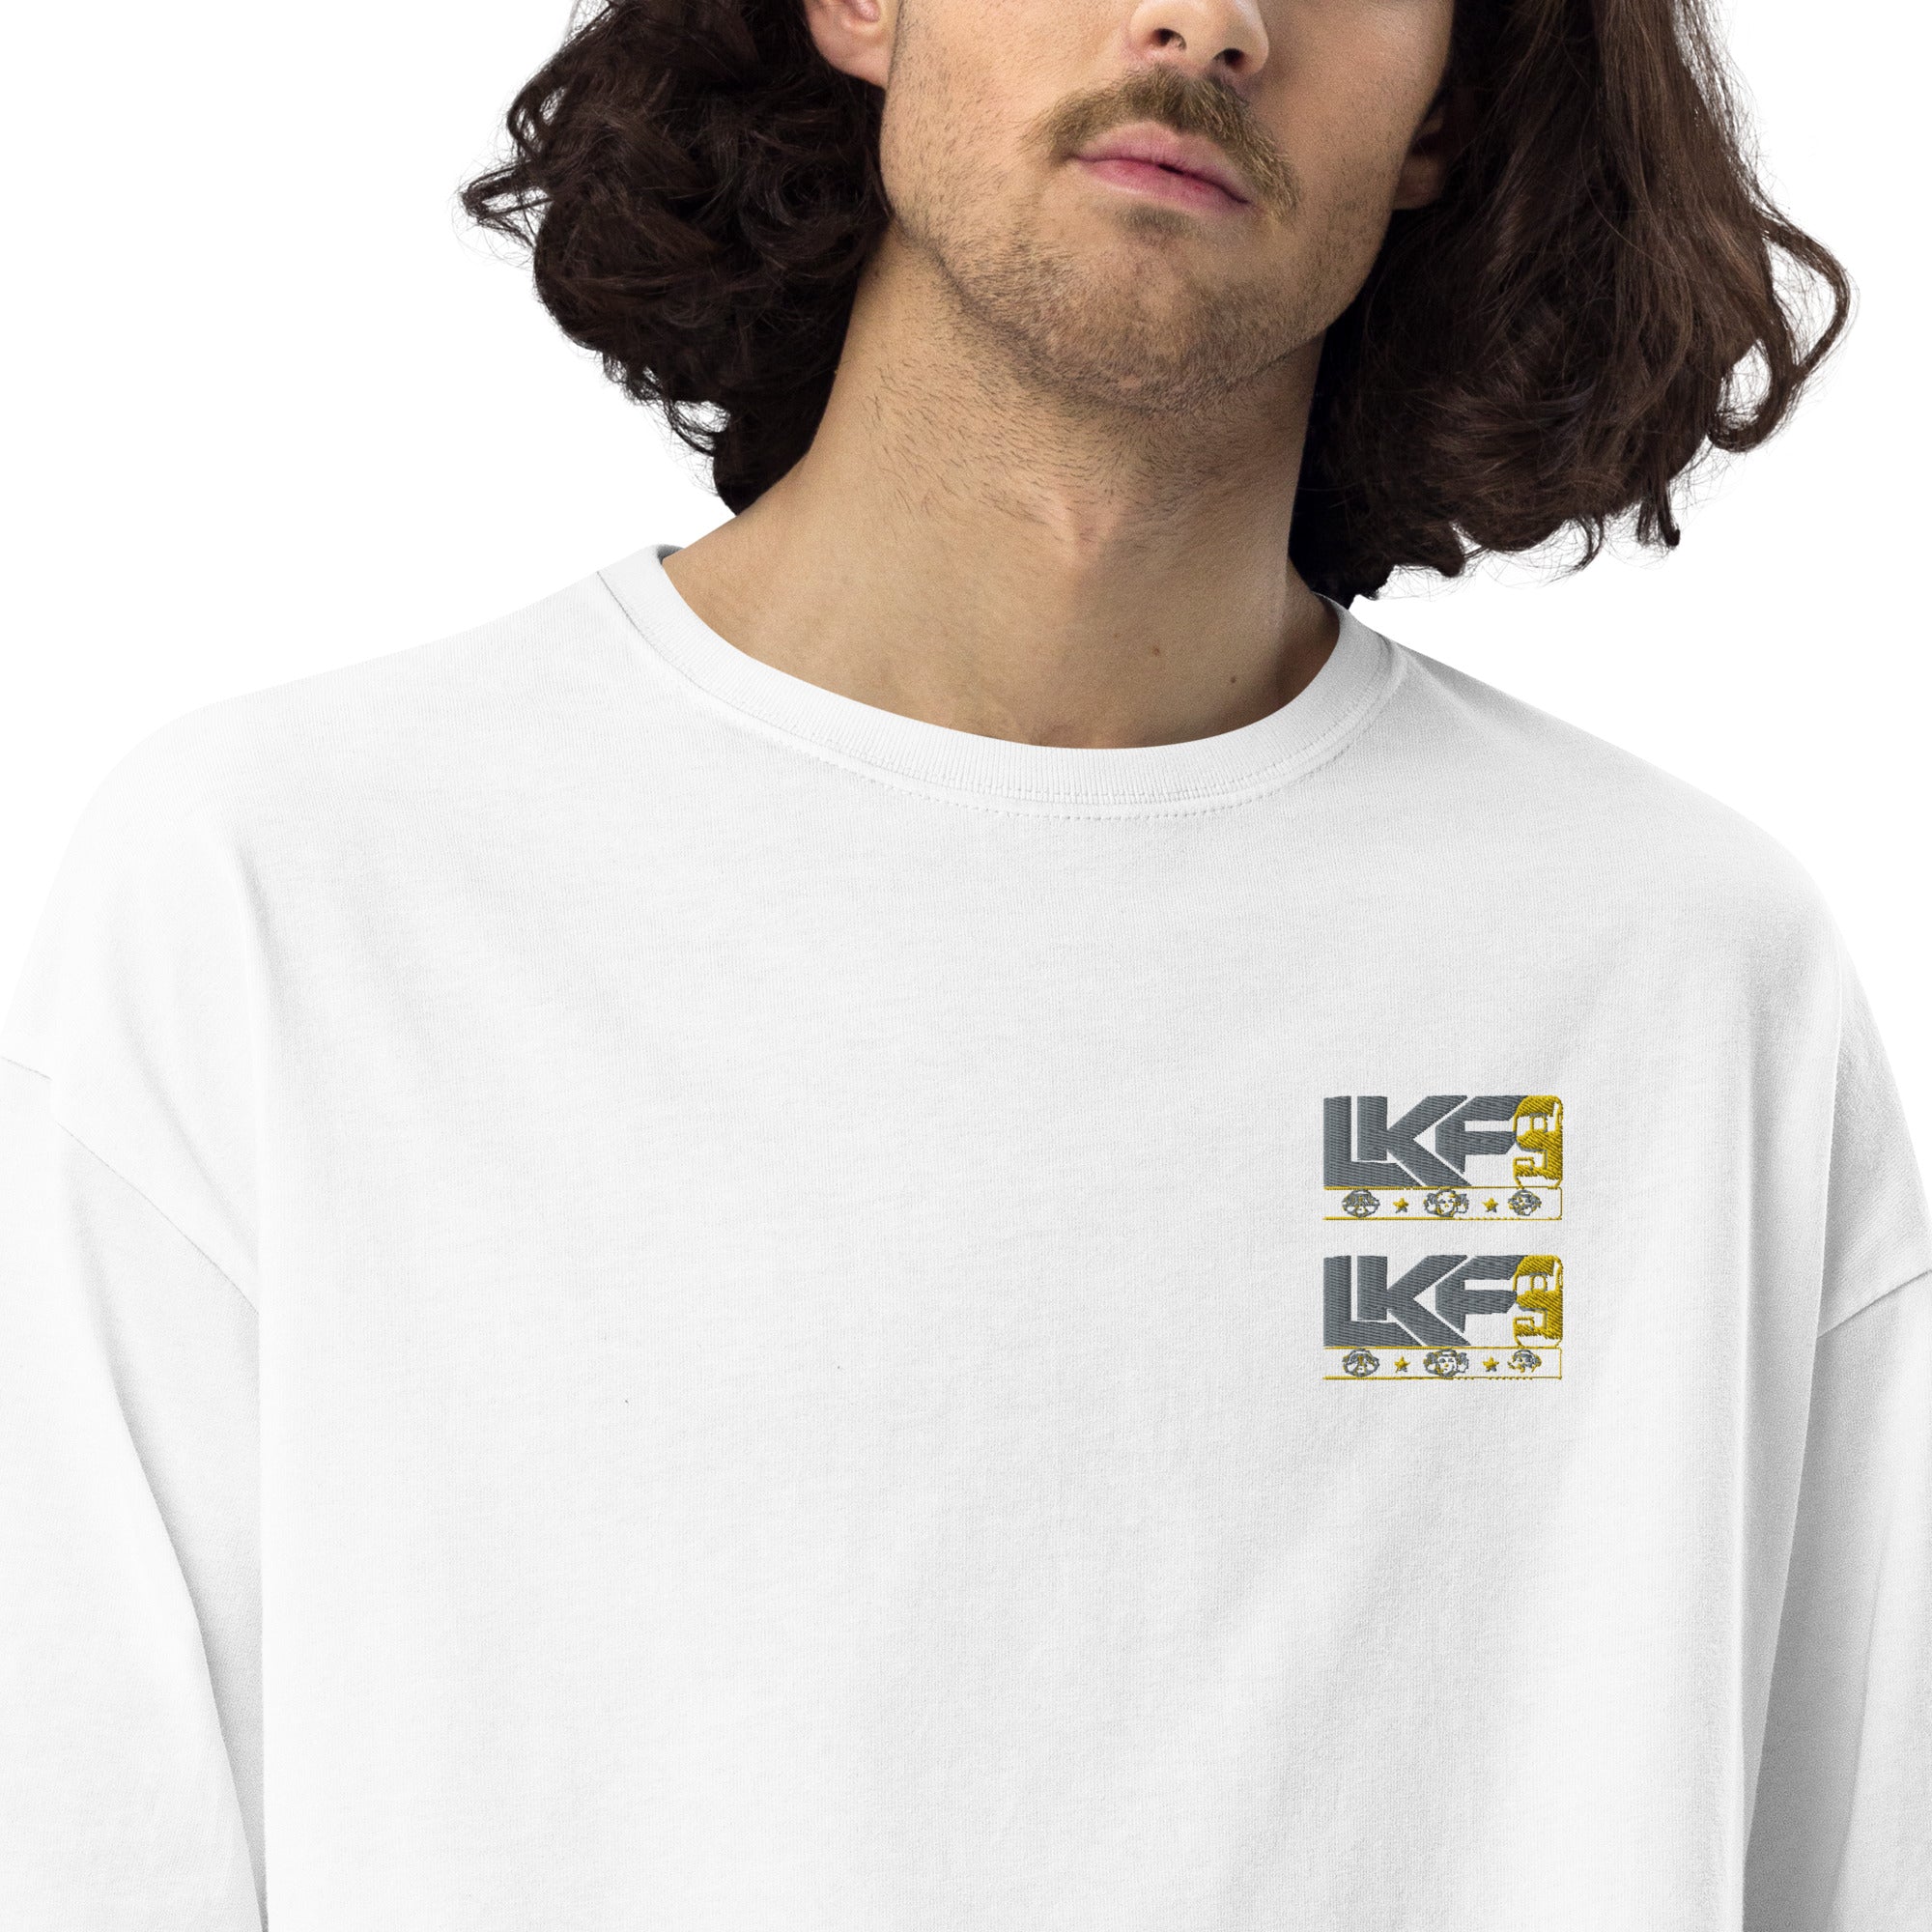 Unisex oversized LKF9 t-shirt